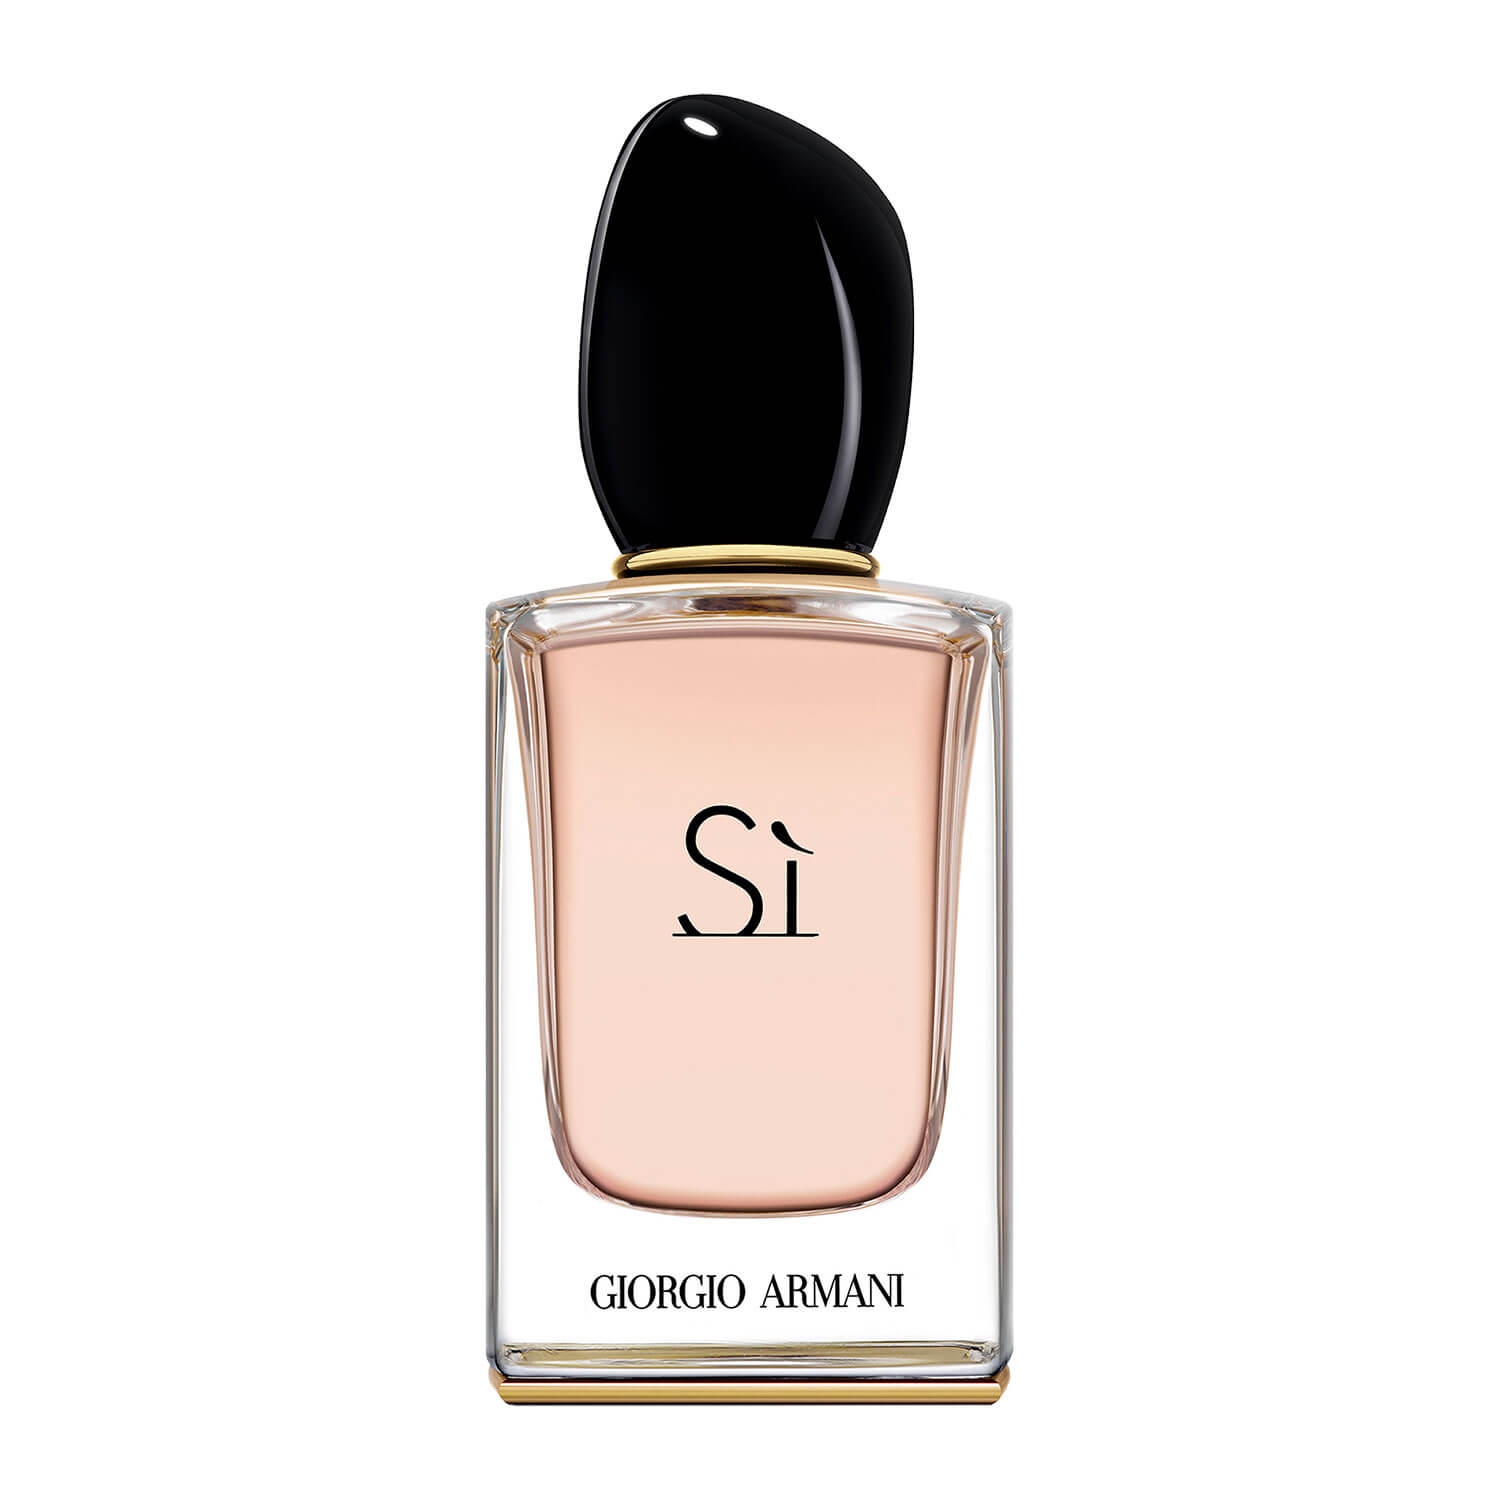 Product image from Sì - Eau de Parfum